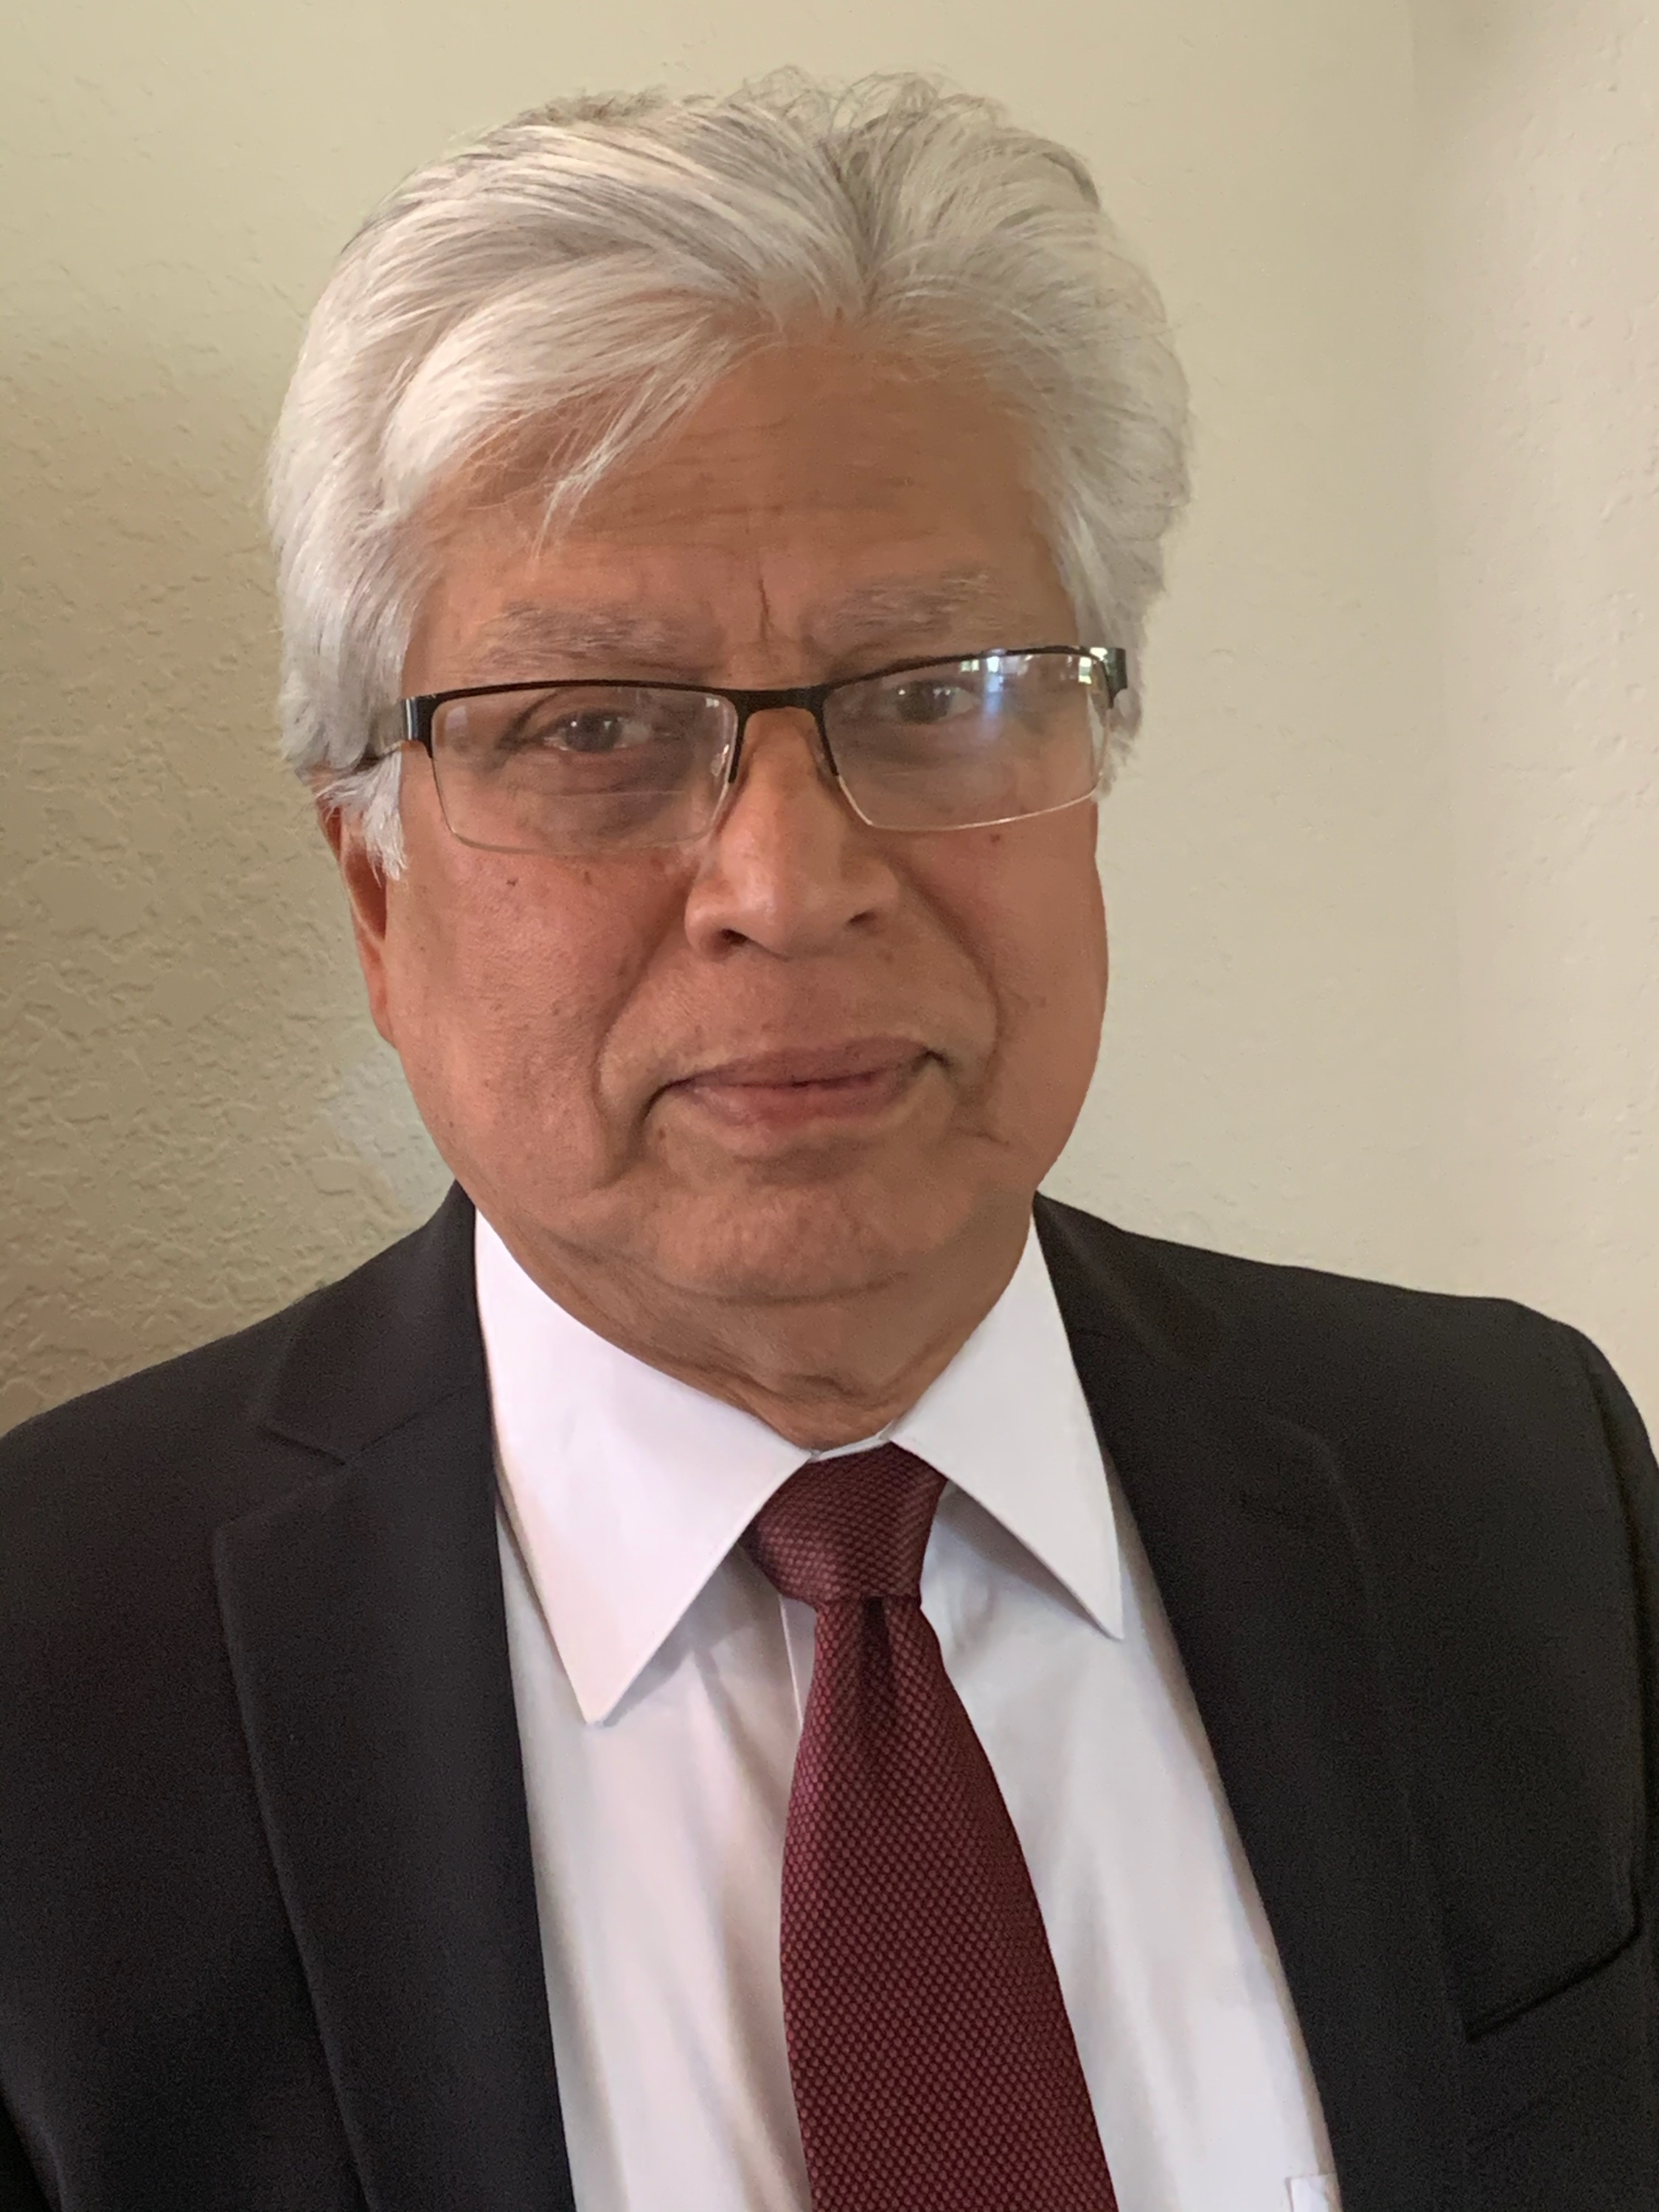 Arup Das, M.D., Ph.D.